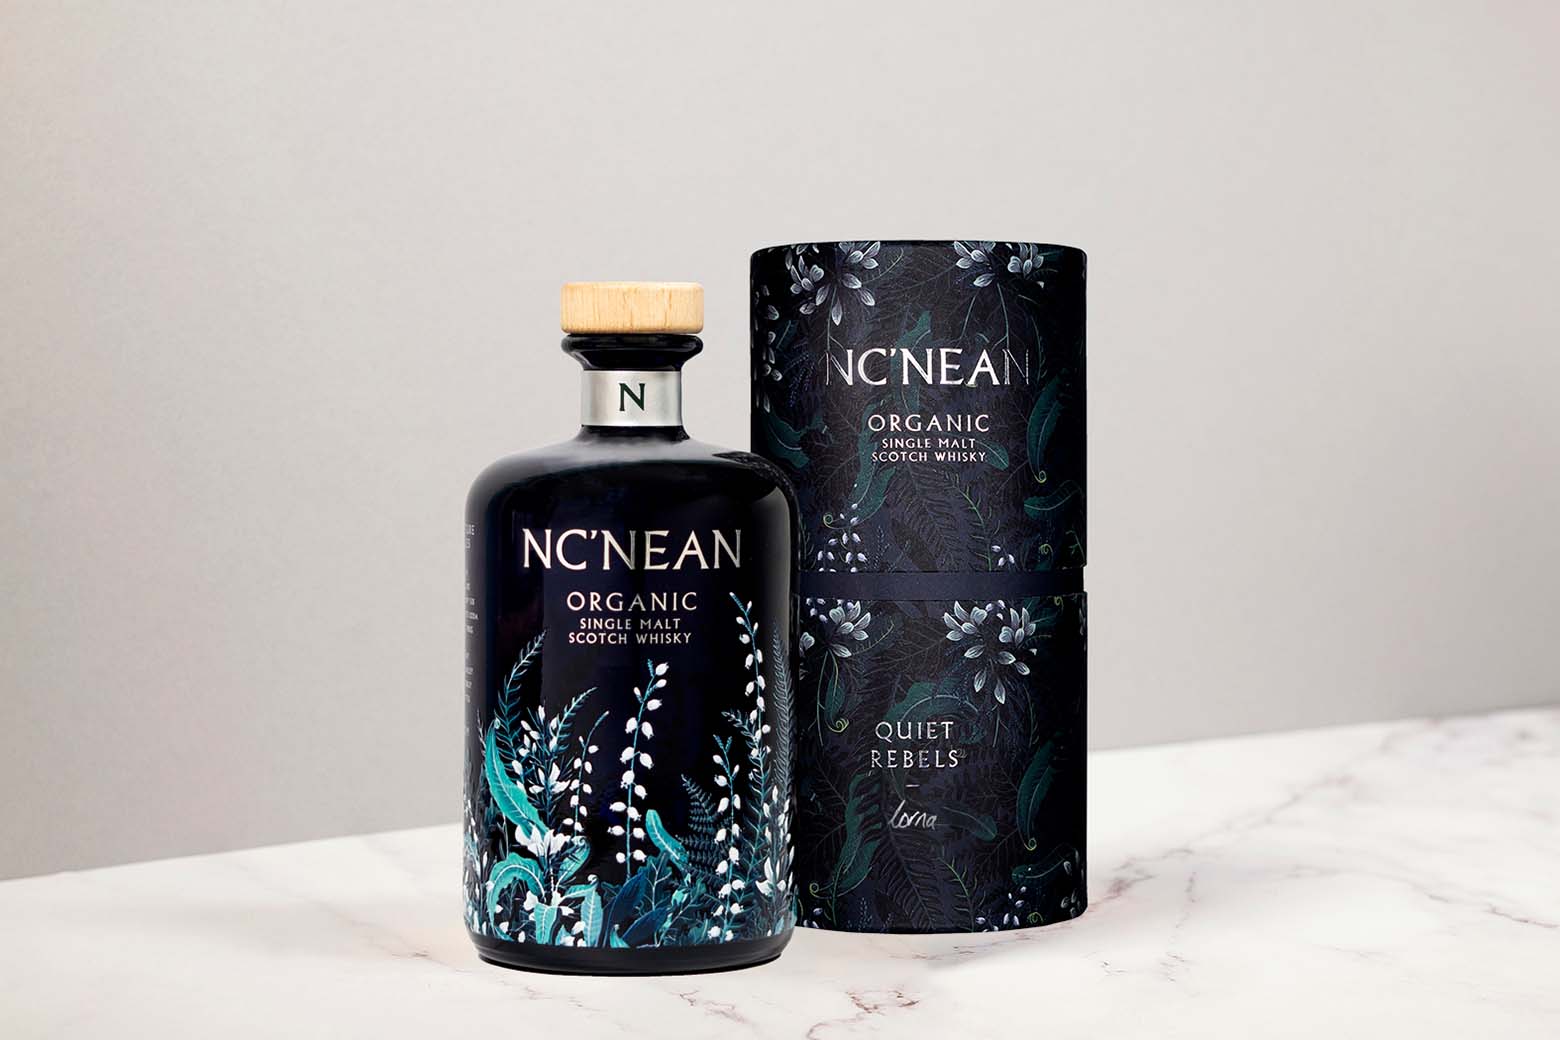 Nc'nean: Bio-Whisky aus Westschottland